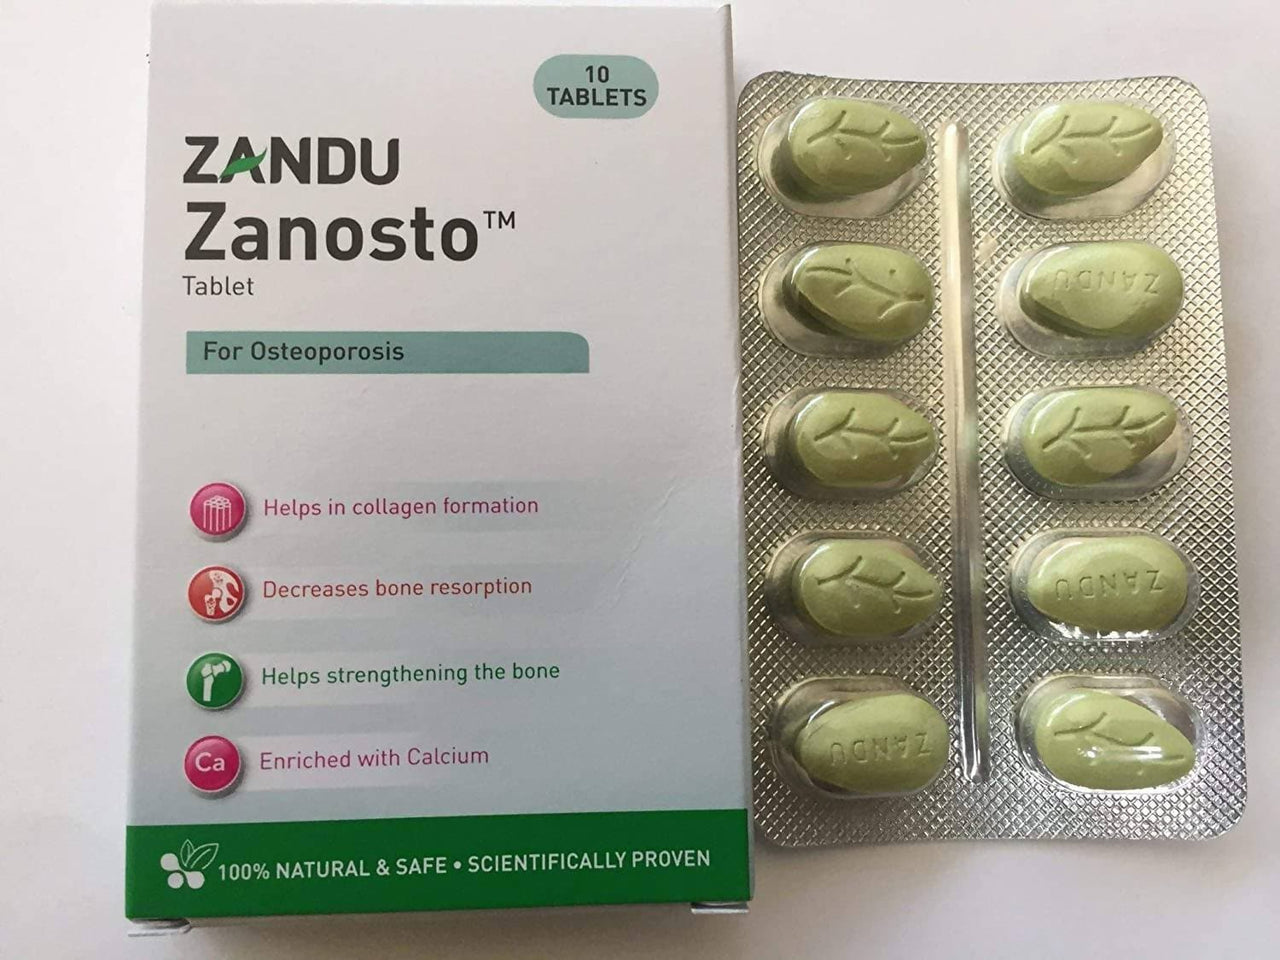 Zandu Zanosto Tablet